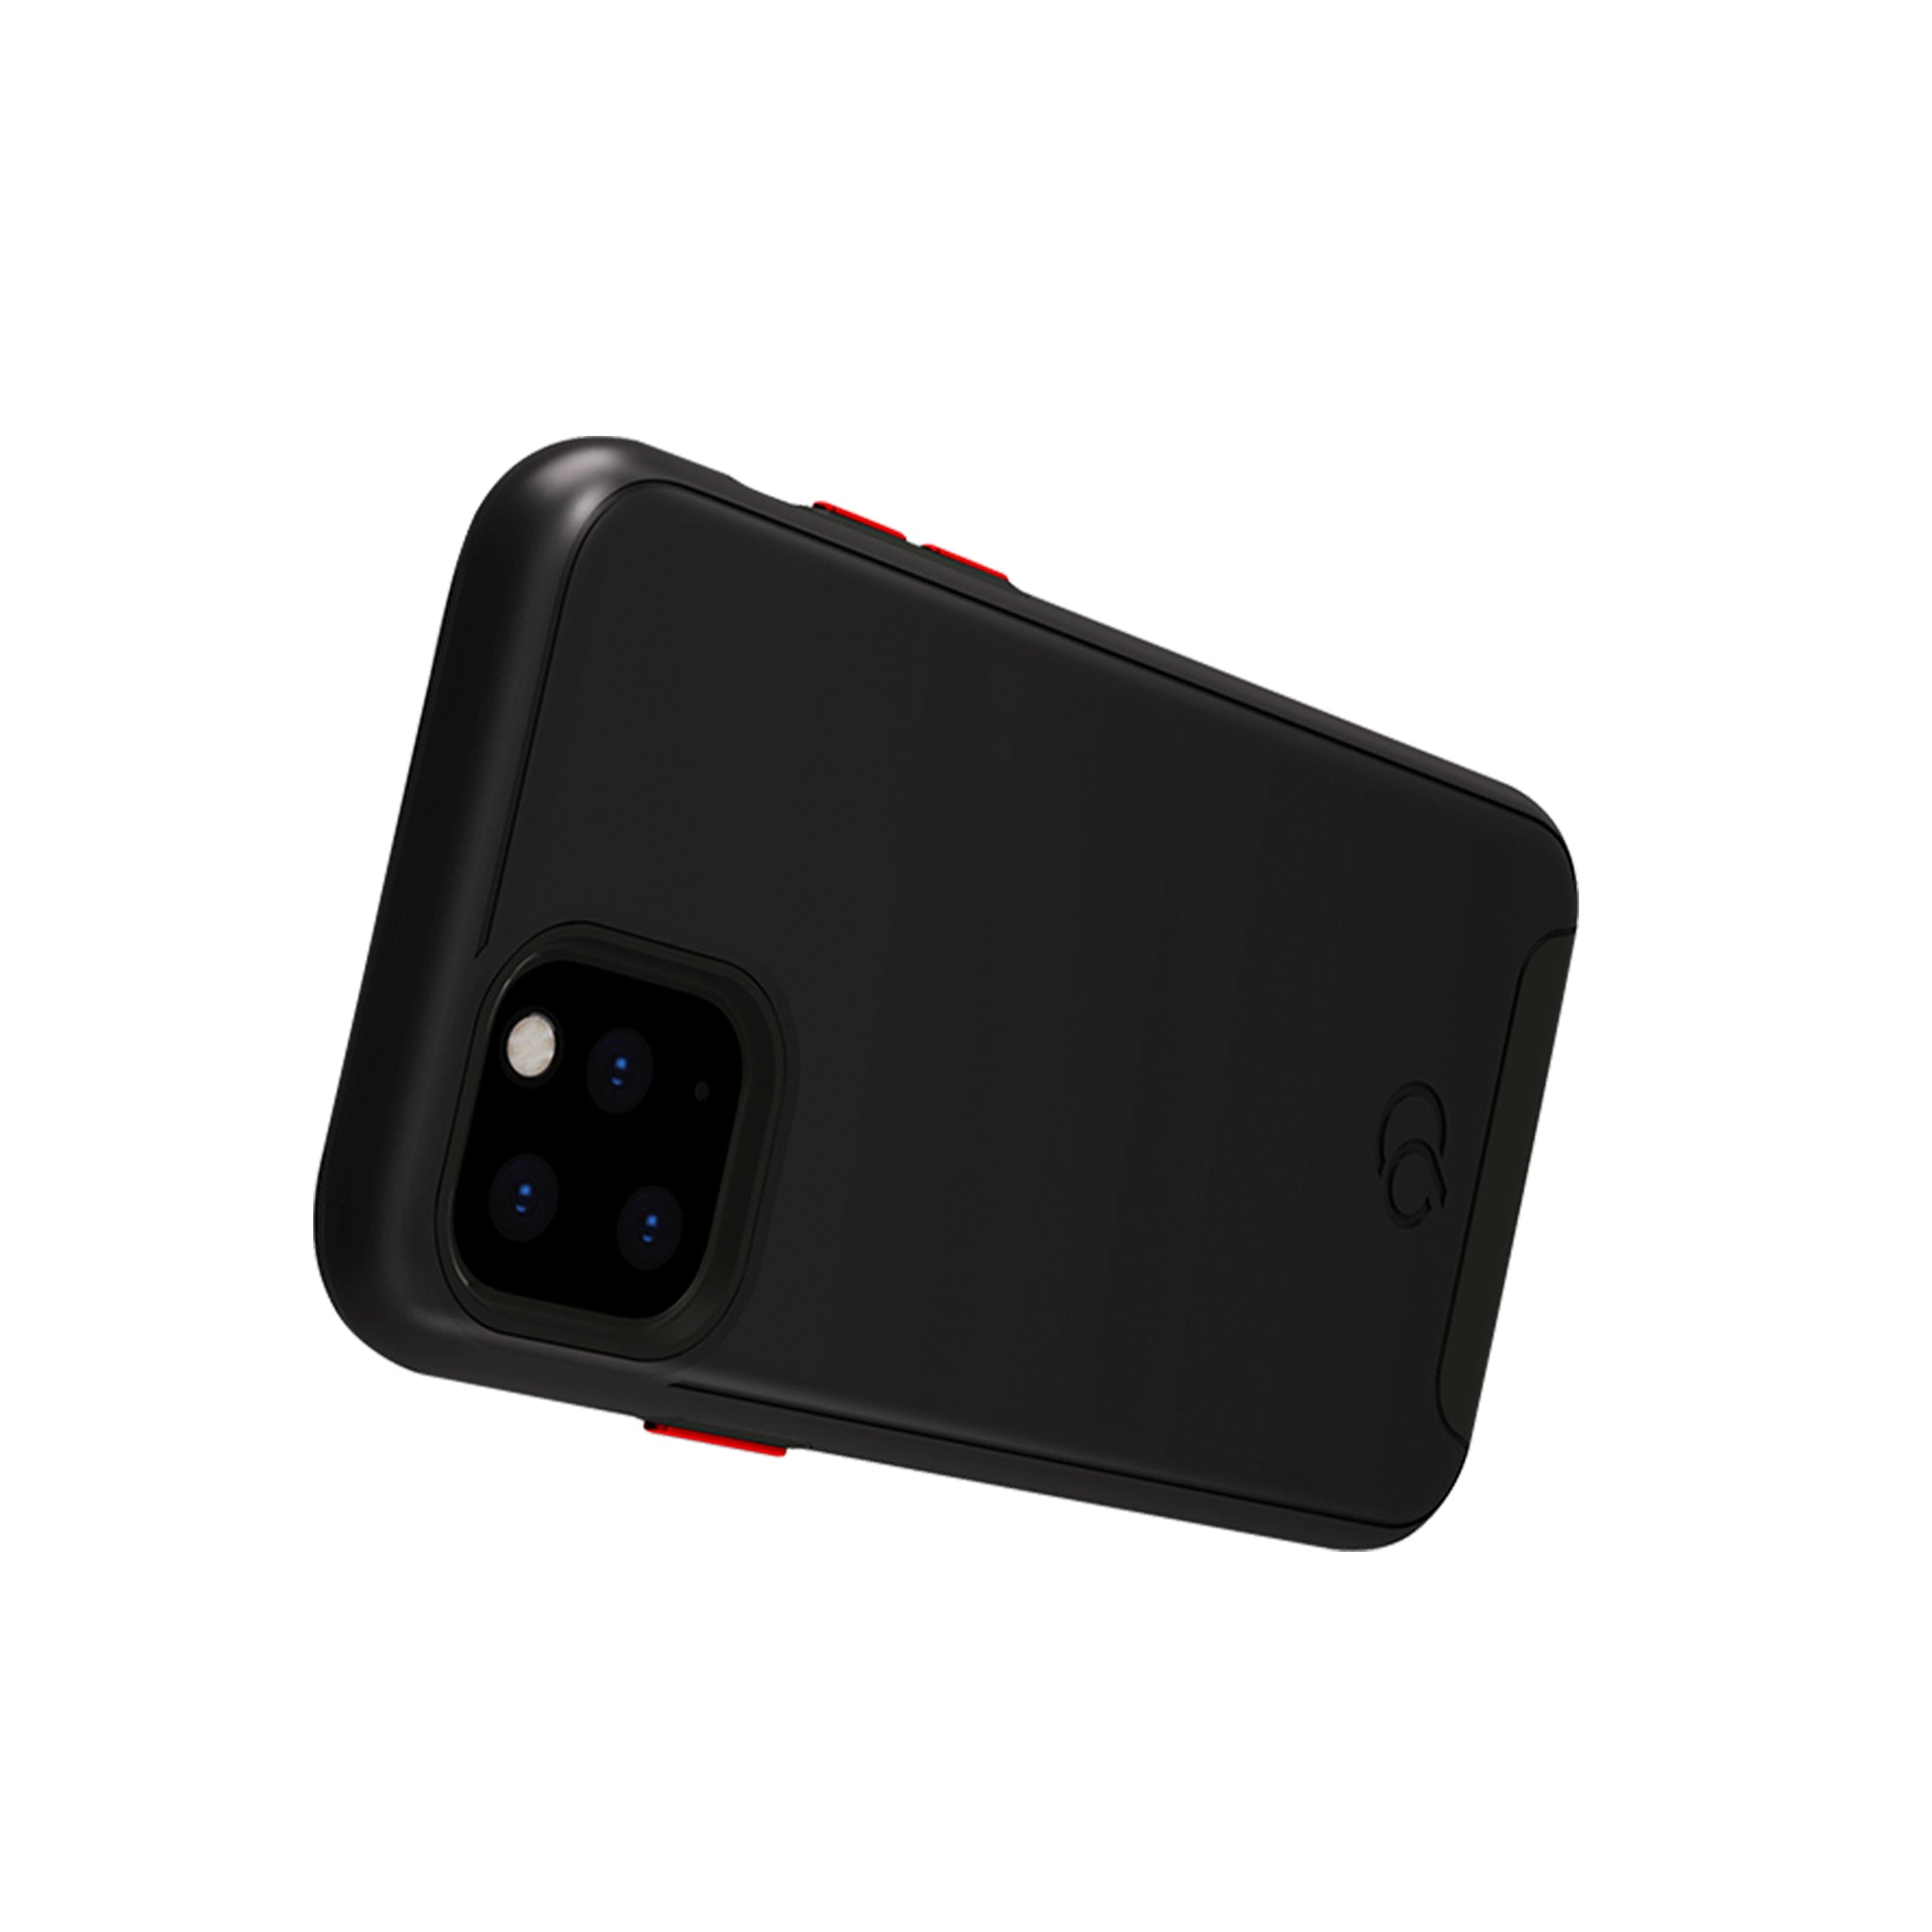 Nimbus9 - Cirrus 2 Case For Apple Iphone 11 Pro - Black